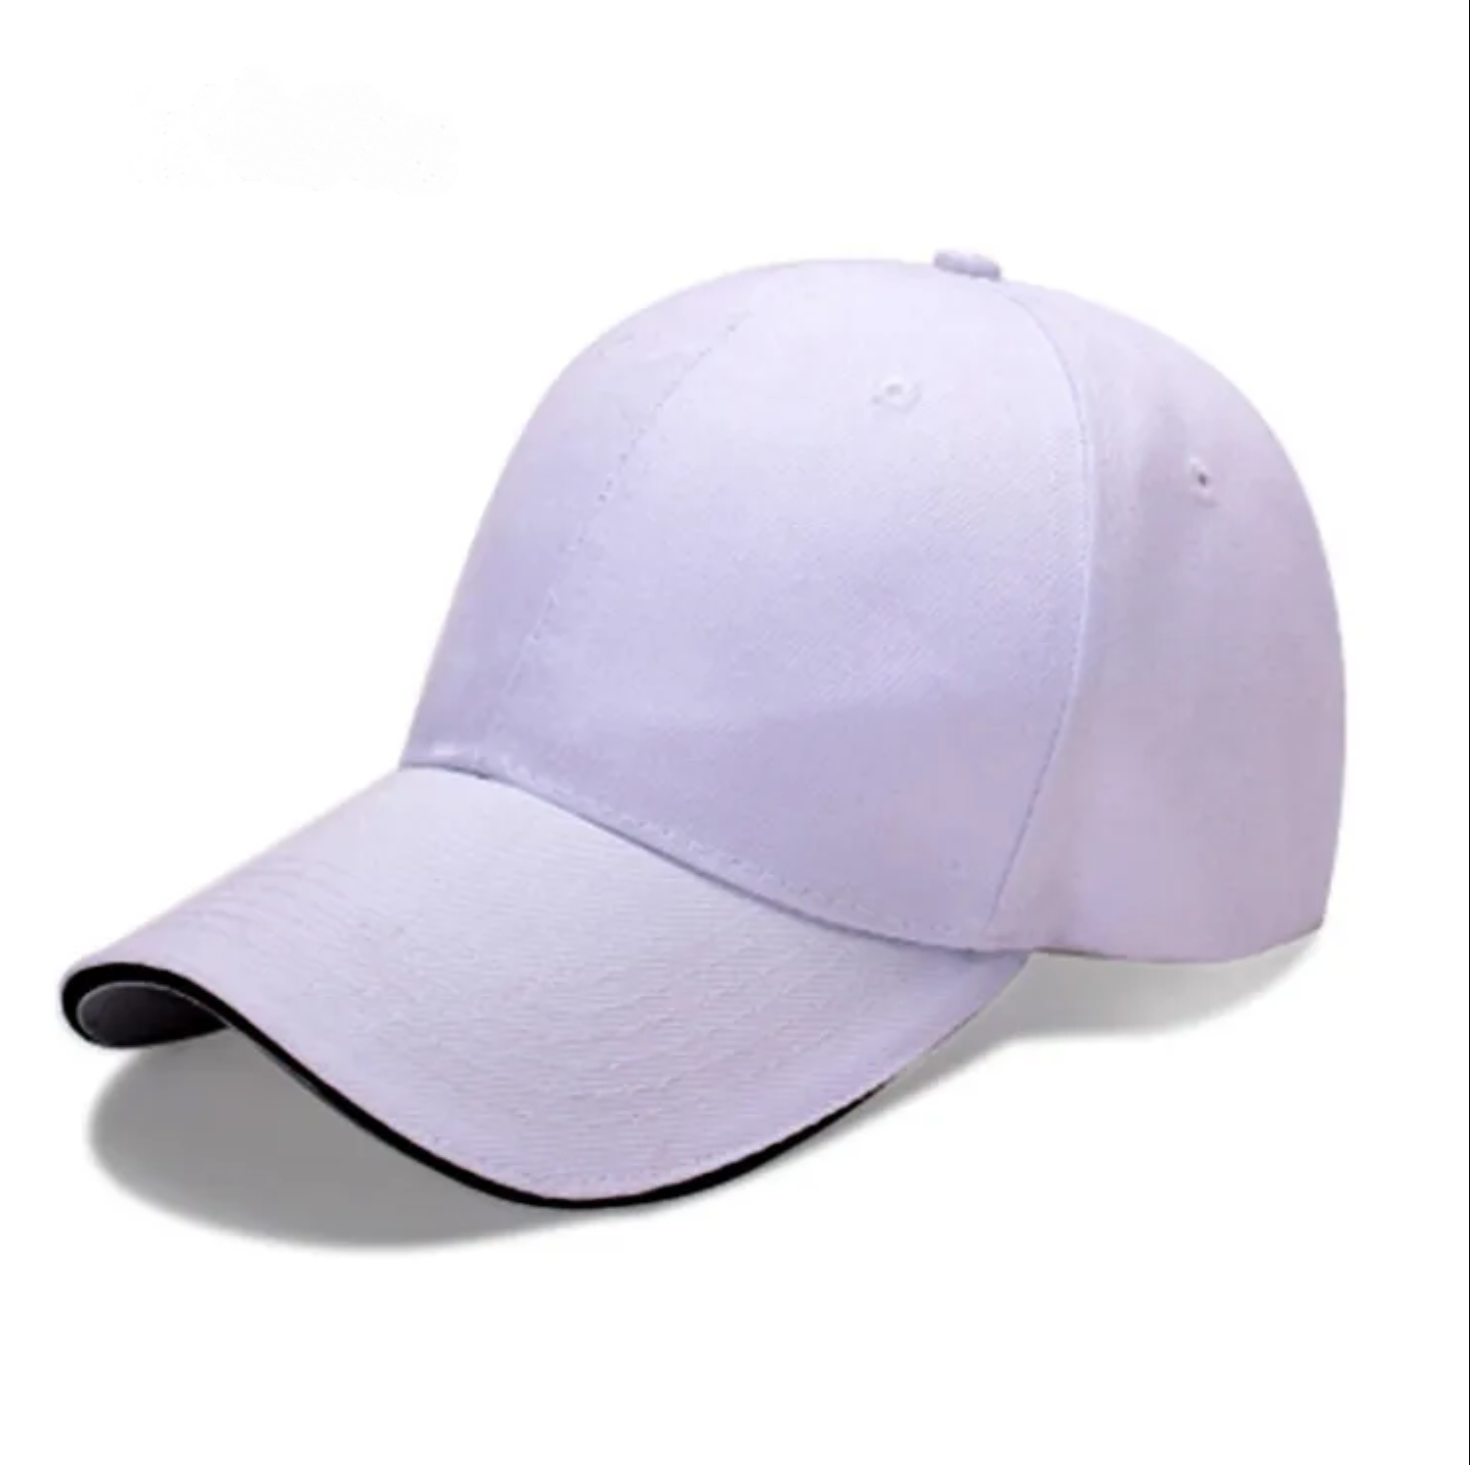 Sports Cap for Men Plain Caps for Baseball Cricket